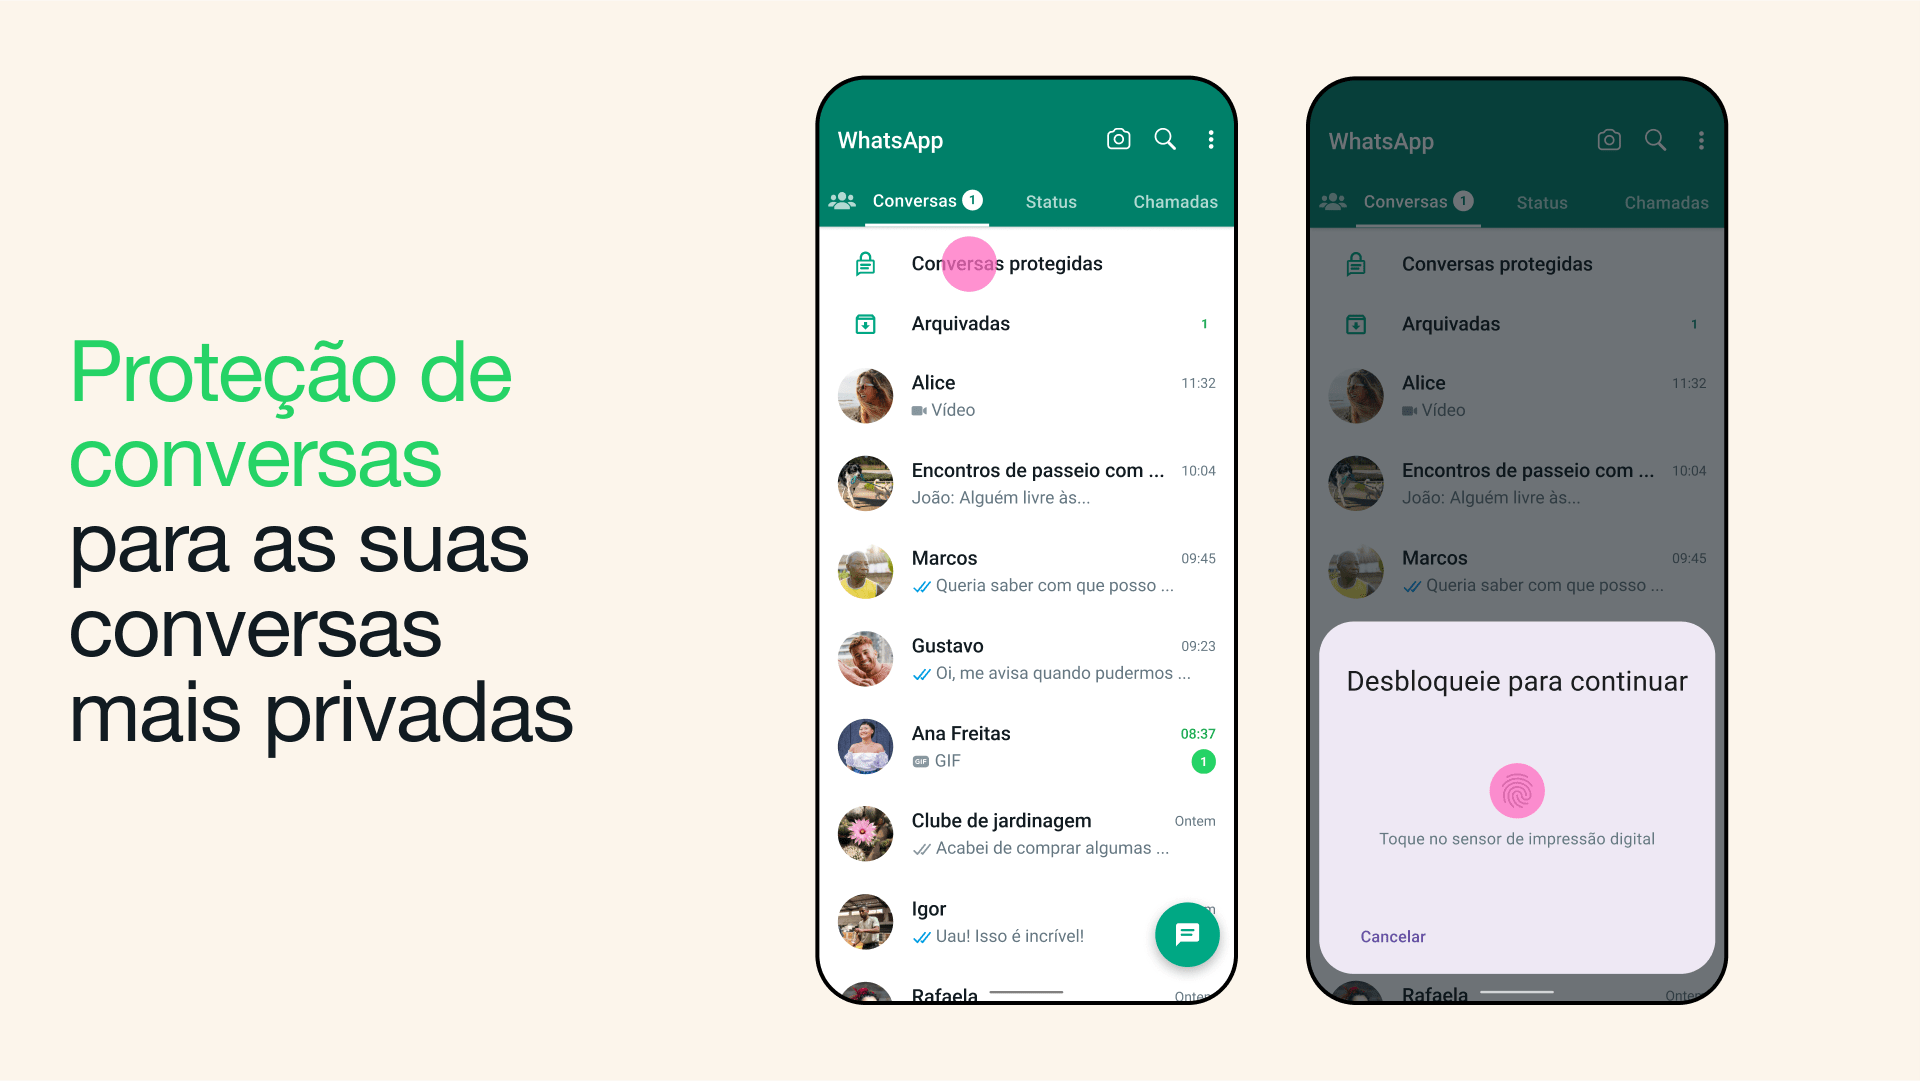 Dois prints do WhatsApp para Android mostrando a proteção de conversas em ação.